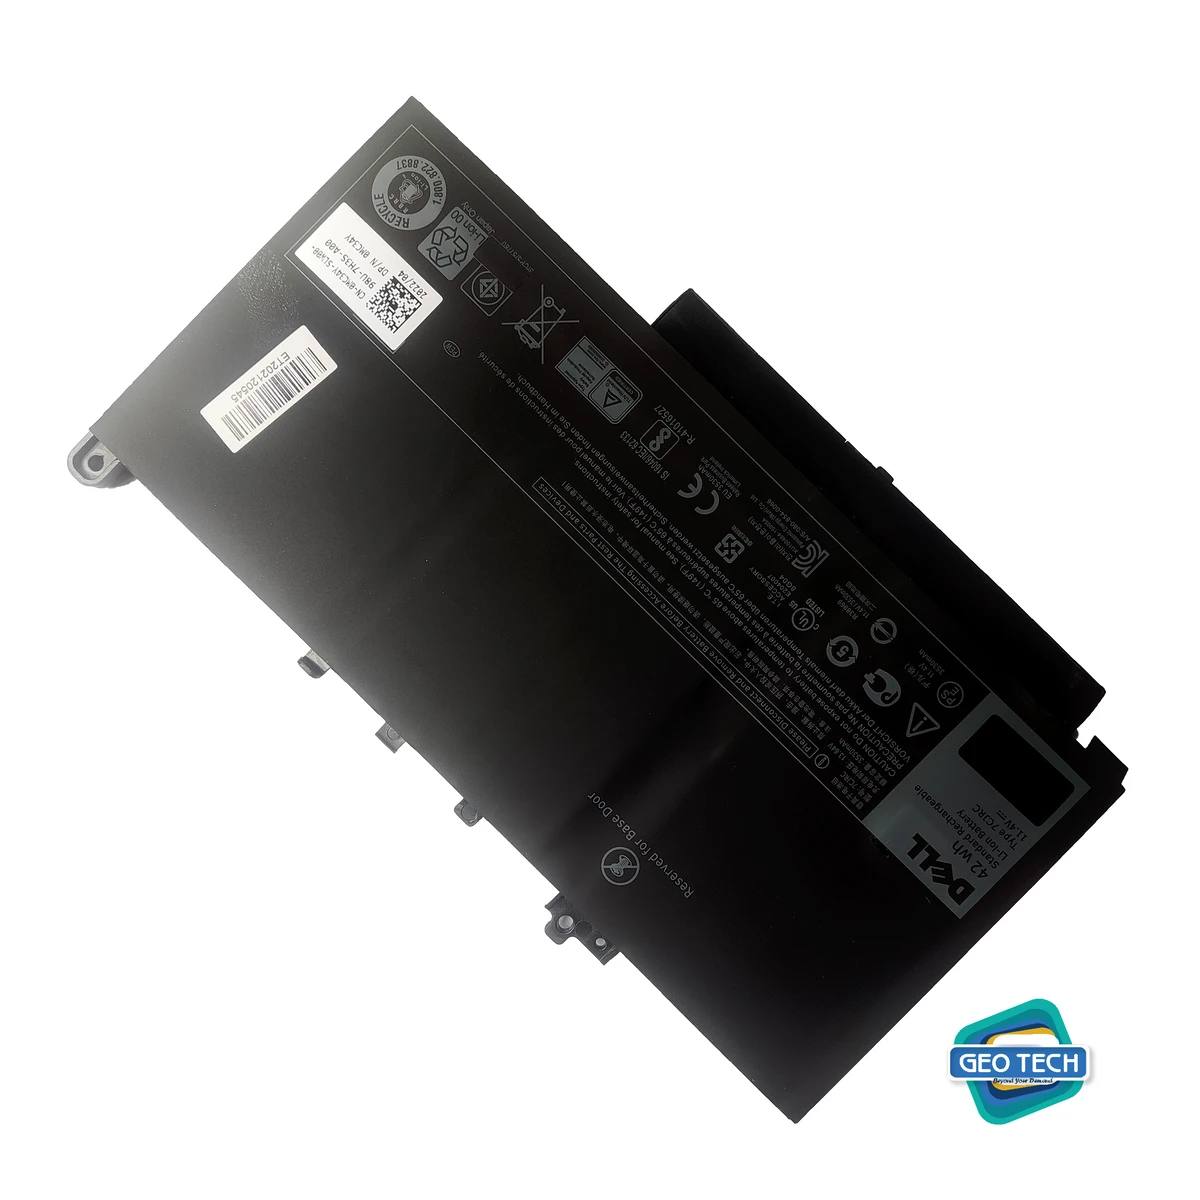 Battery For Dell Latitude 12/14 7000 Series: E7270 E7470 Laptop, PN: J60J5 MC34Y P26S 242WD GG4FM